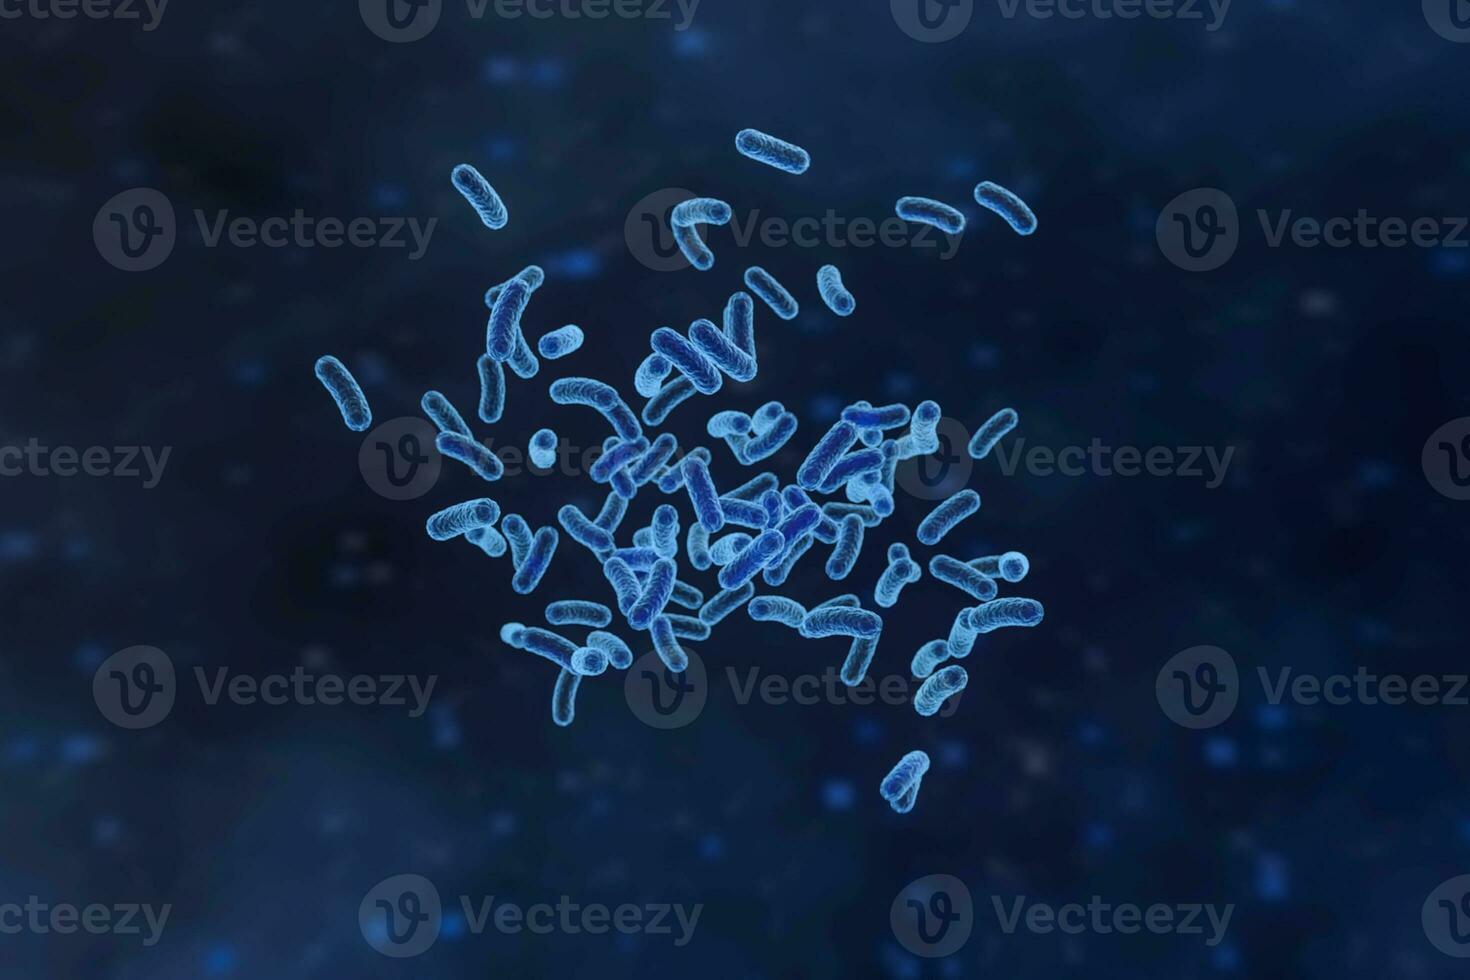 infektiös virus med yta detaljer på blå bakgrund, 3d tolkning. foto